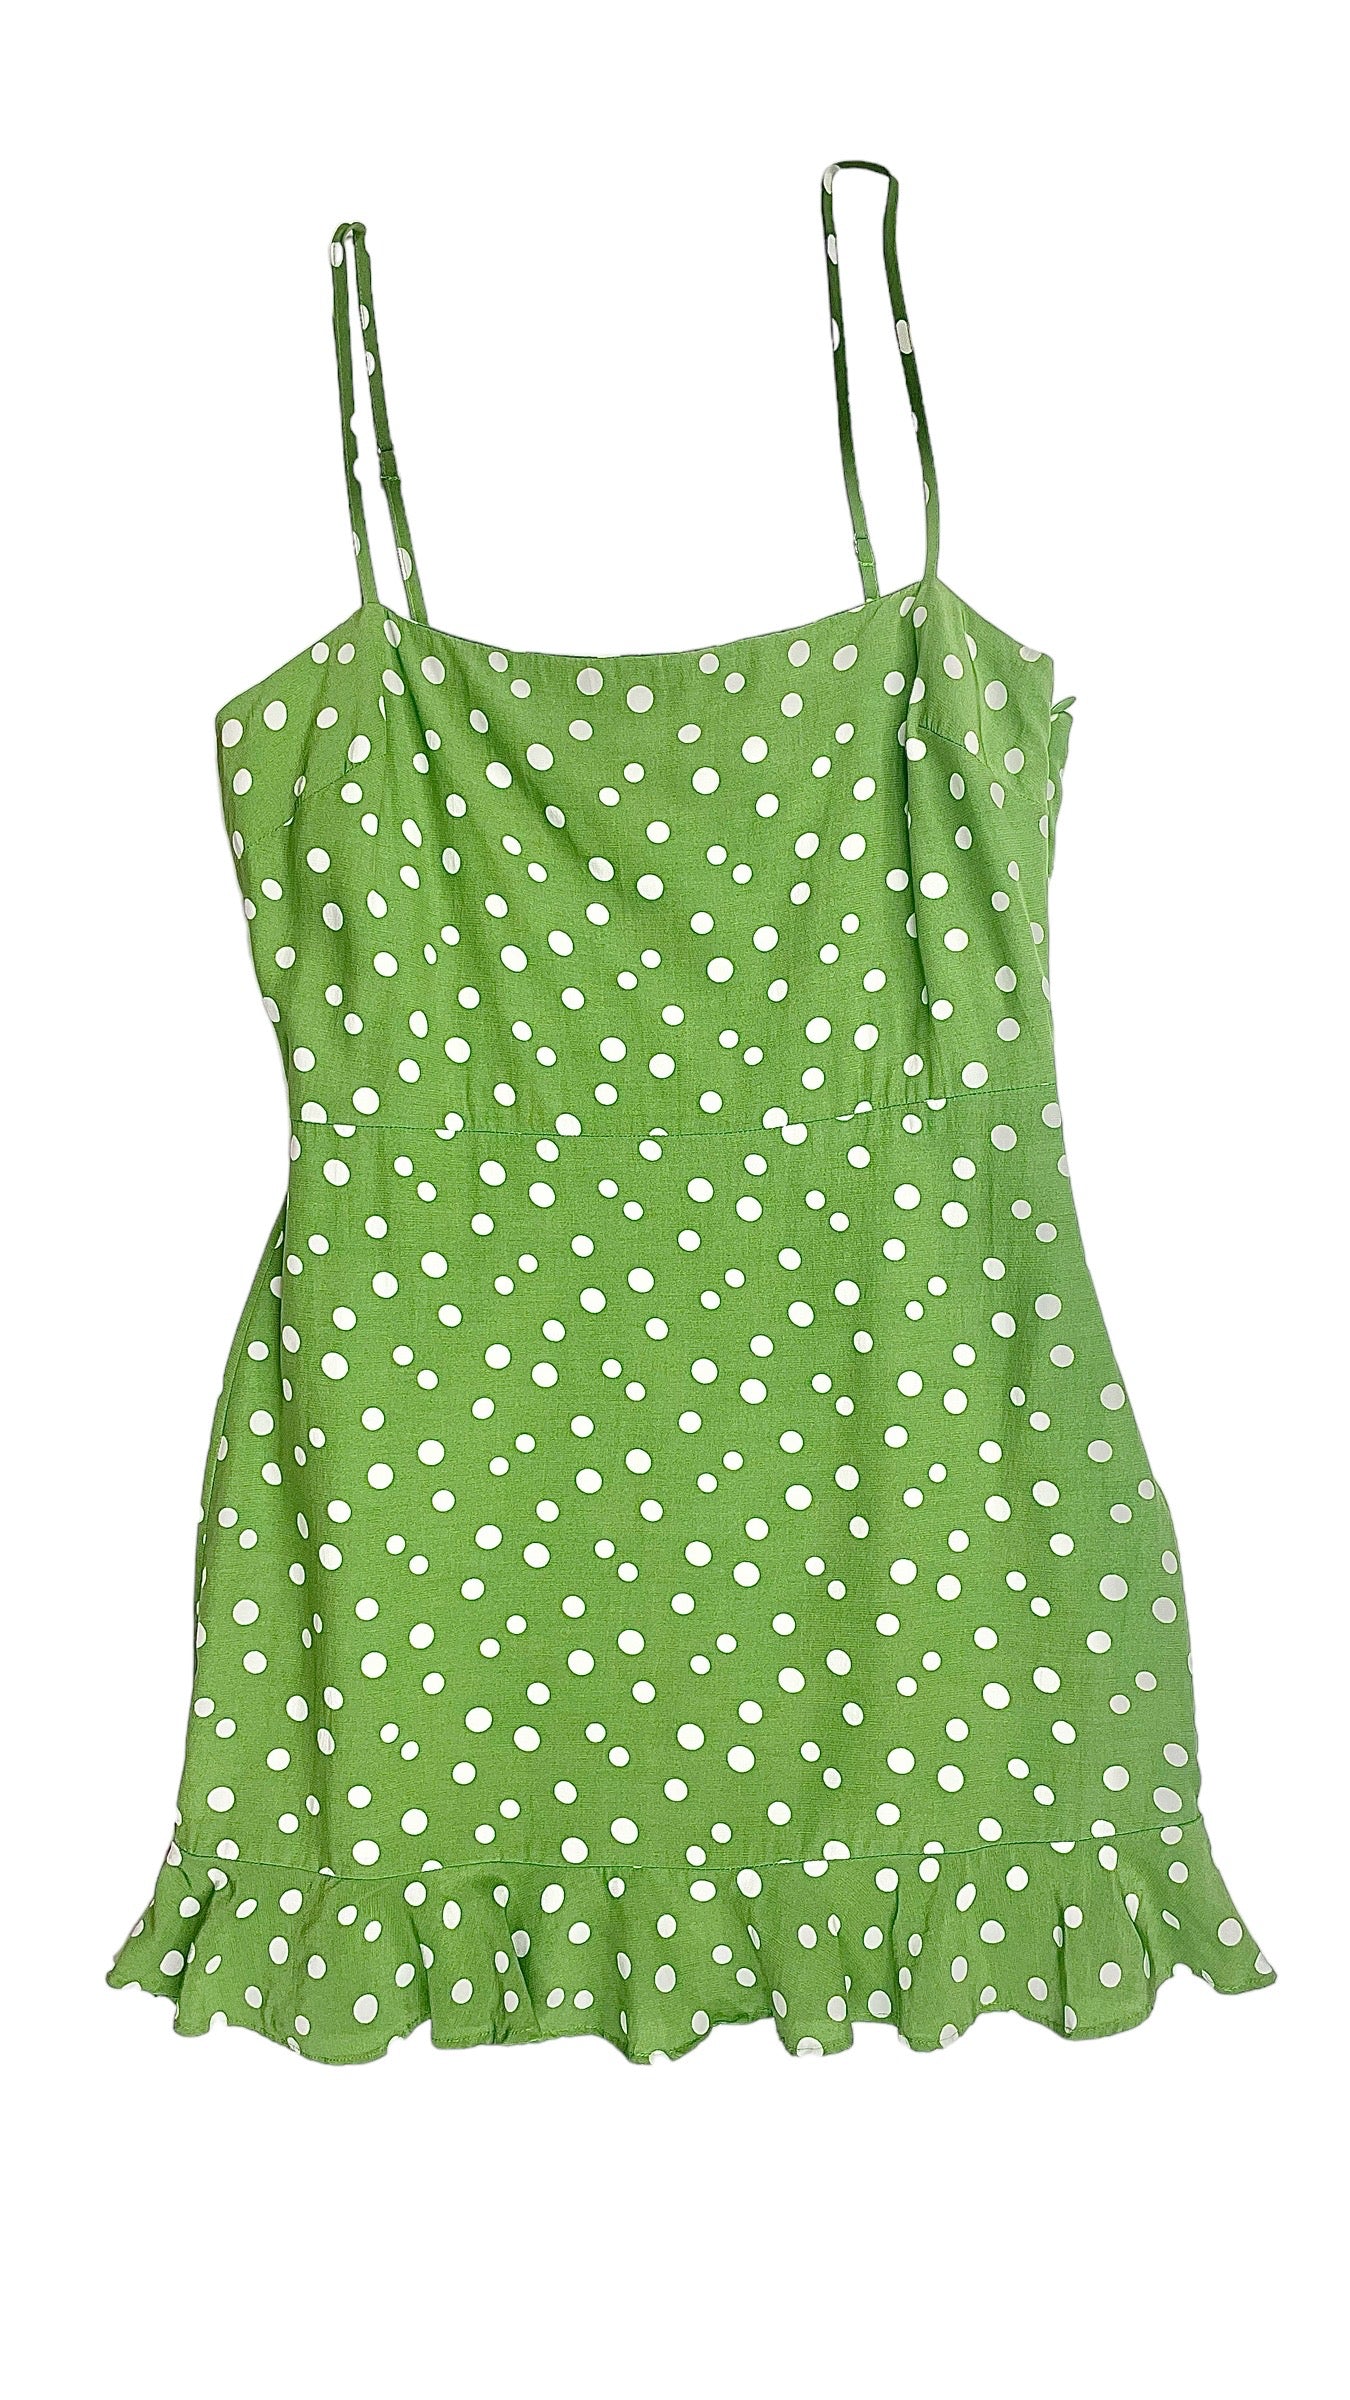 Pre-Loved PRIVACY PLEASE green polka dot mini tank dress - Size S